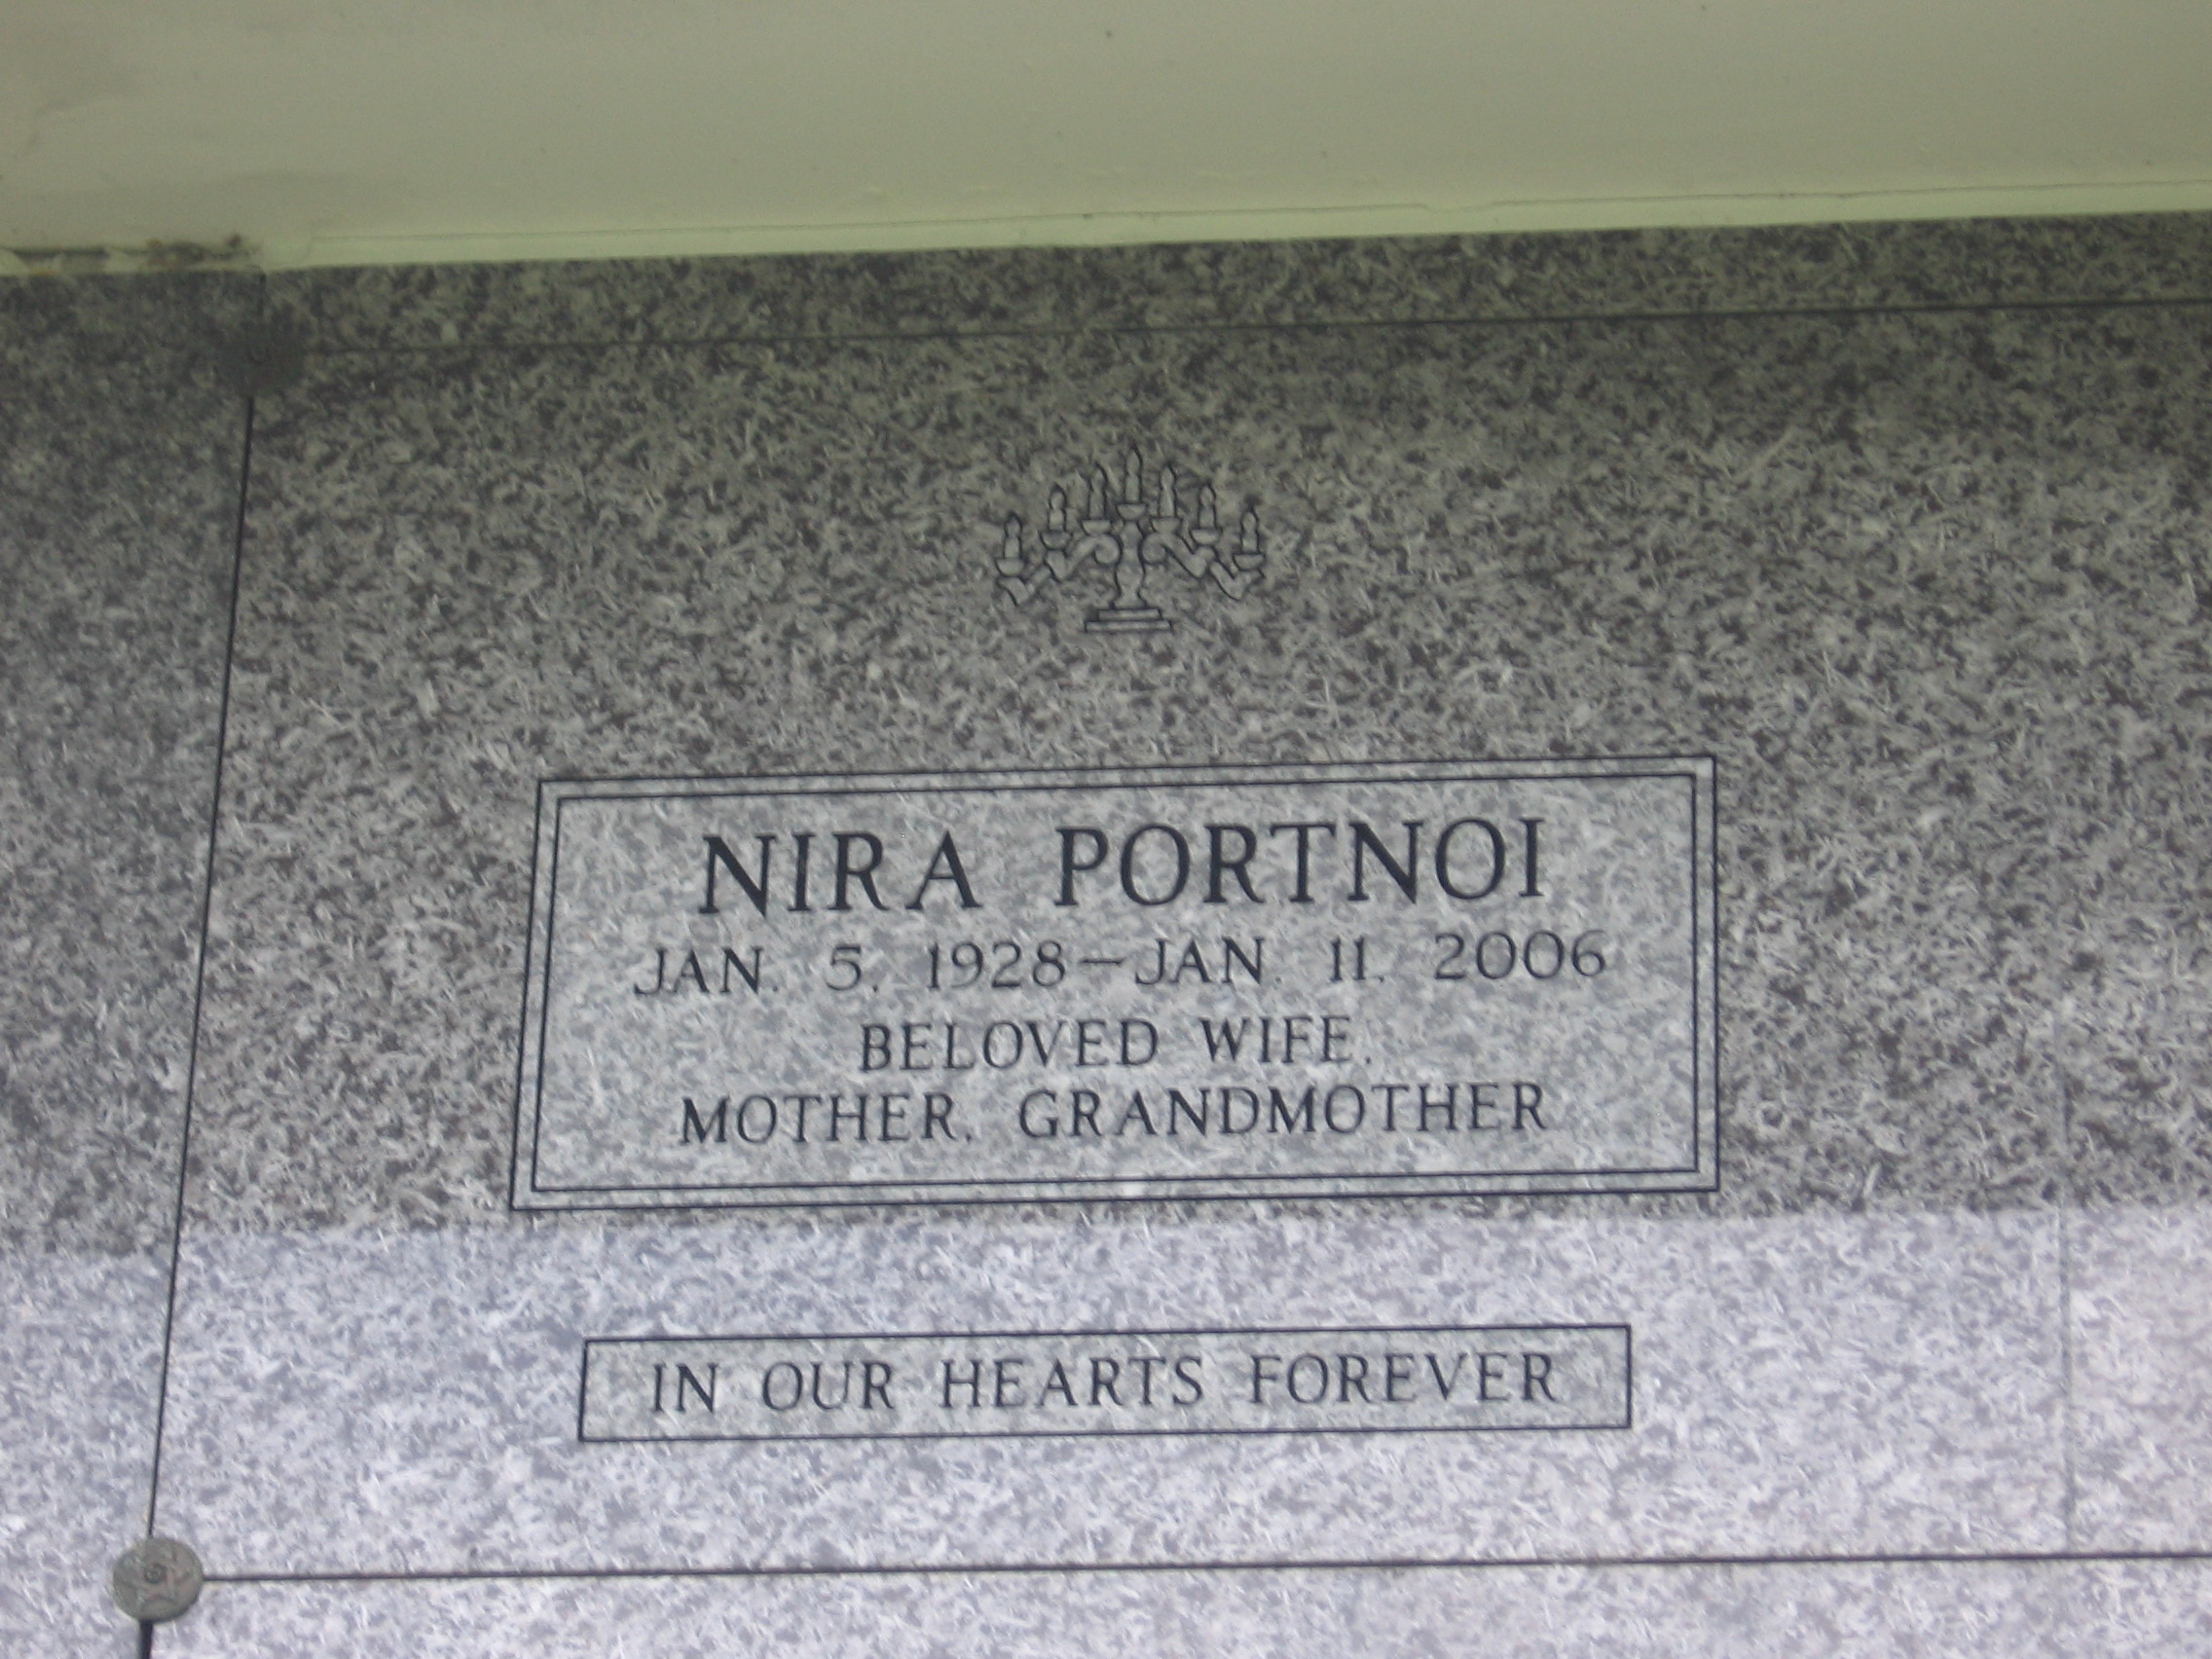 Nira Portnoi